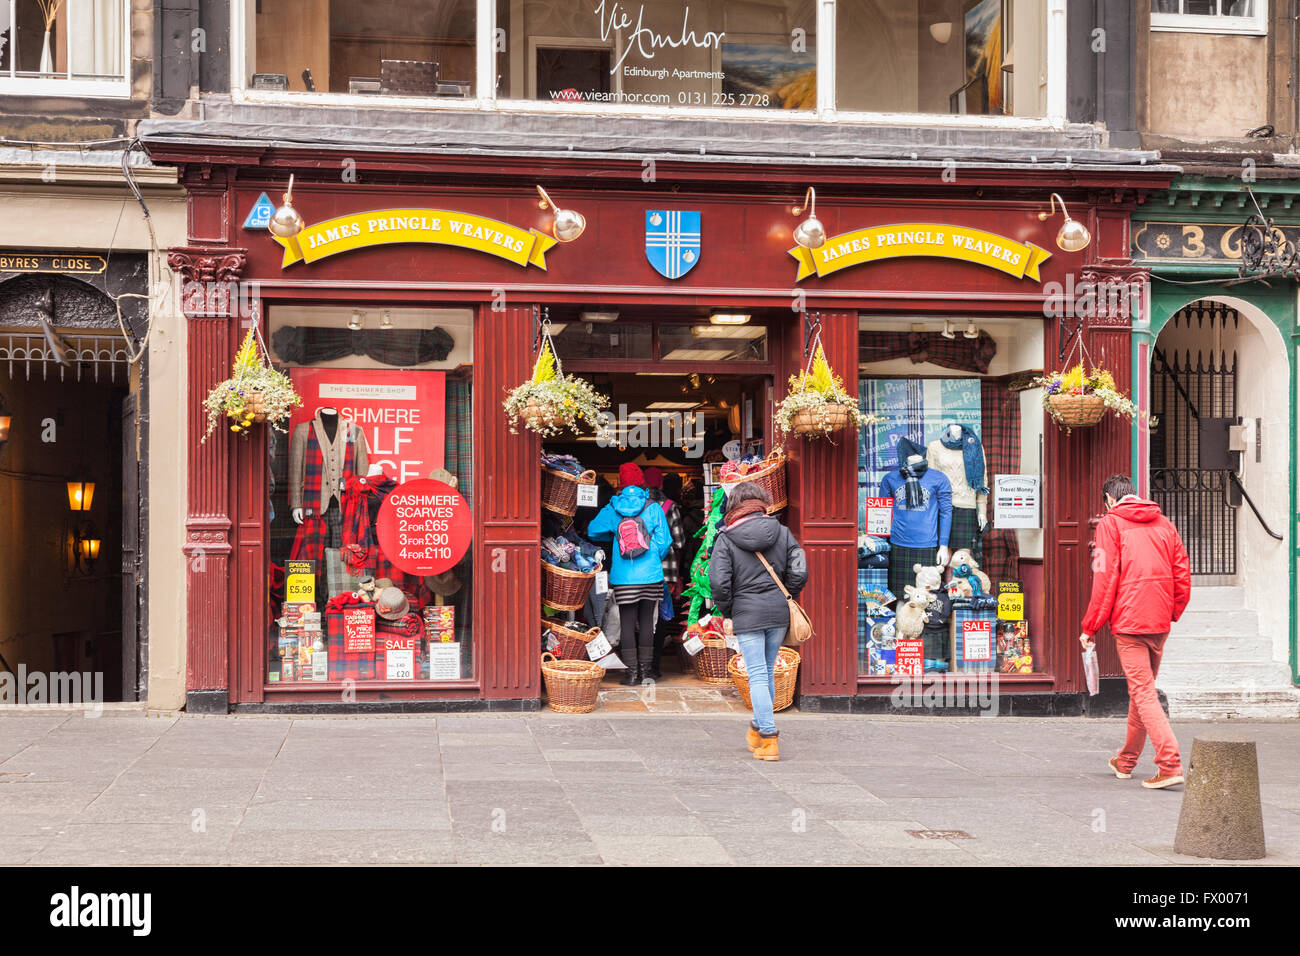 James Pringle tisserands, cashmere et tartan boutique dans le Royal Mile, Edinburgh, Ecosse, Royaume-Uni Banque D'Images